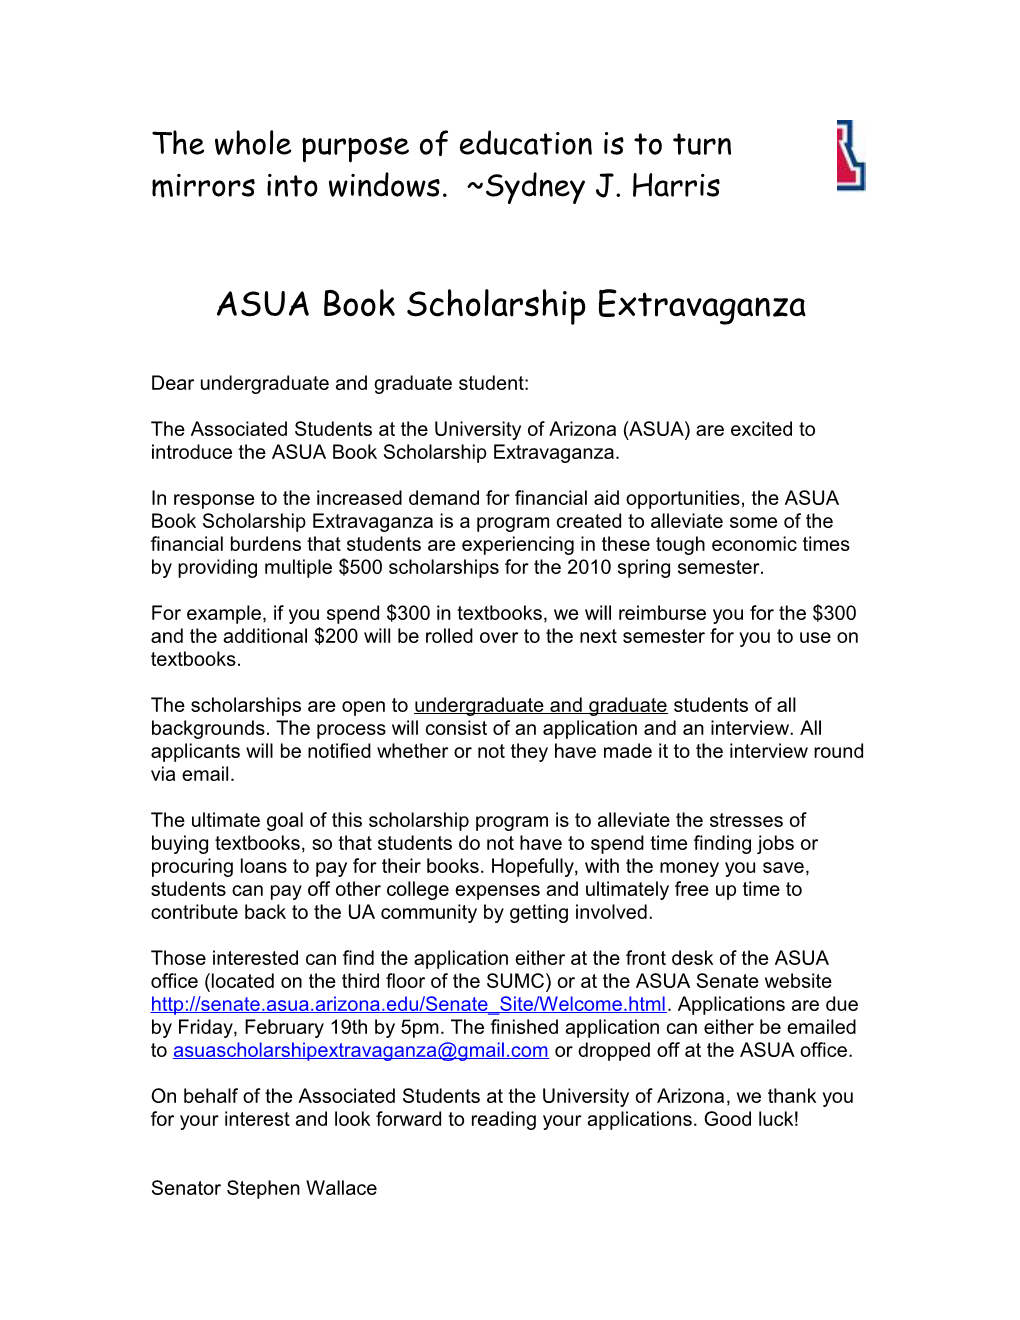 ASUA Book Scholarship Extravaganza